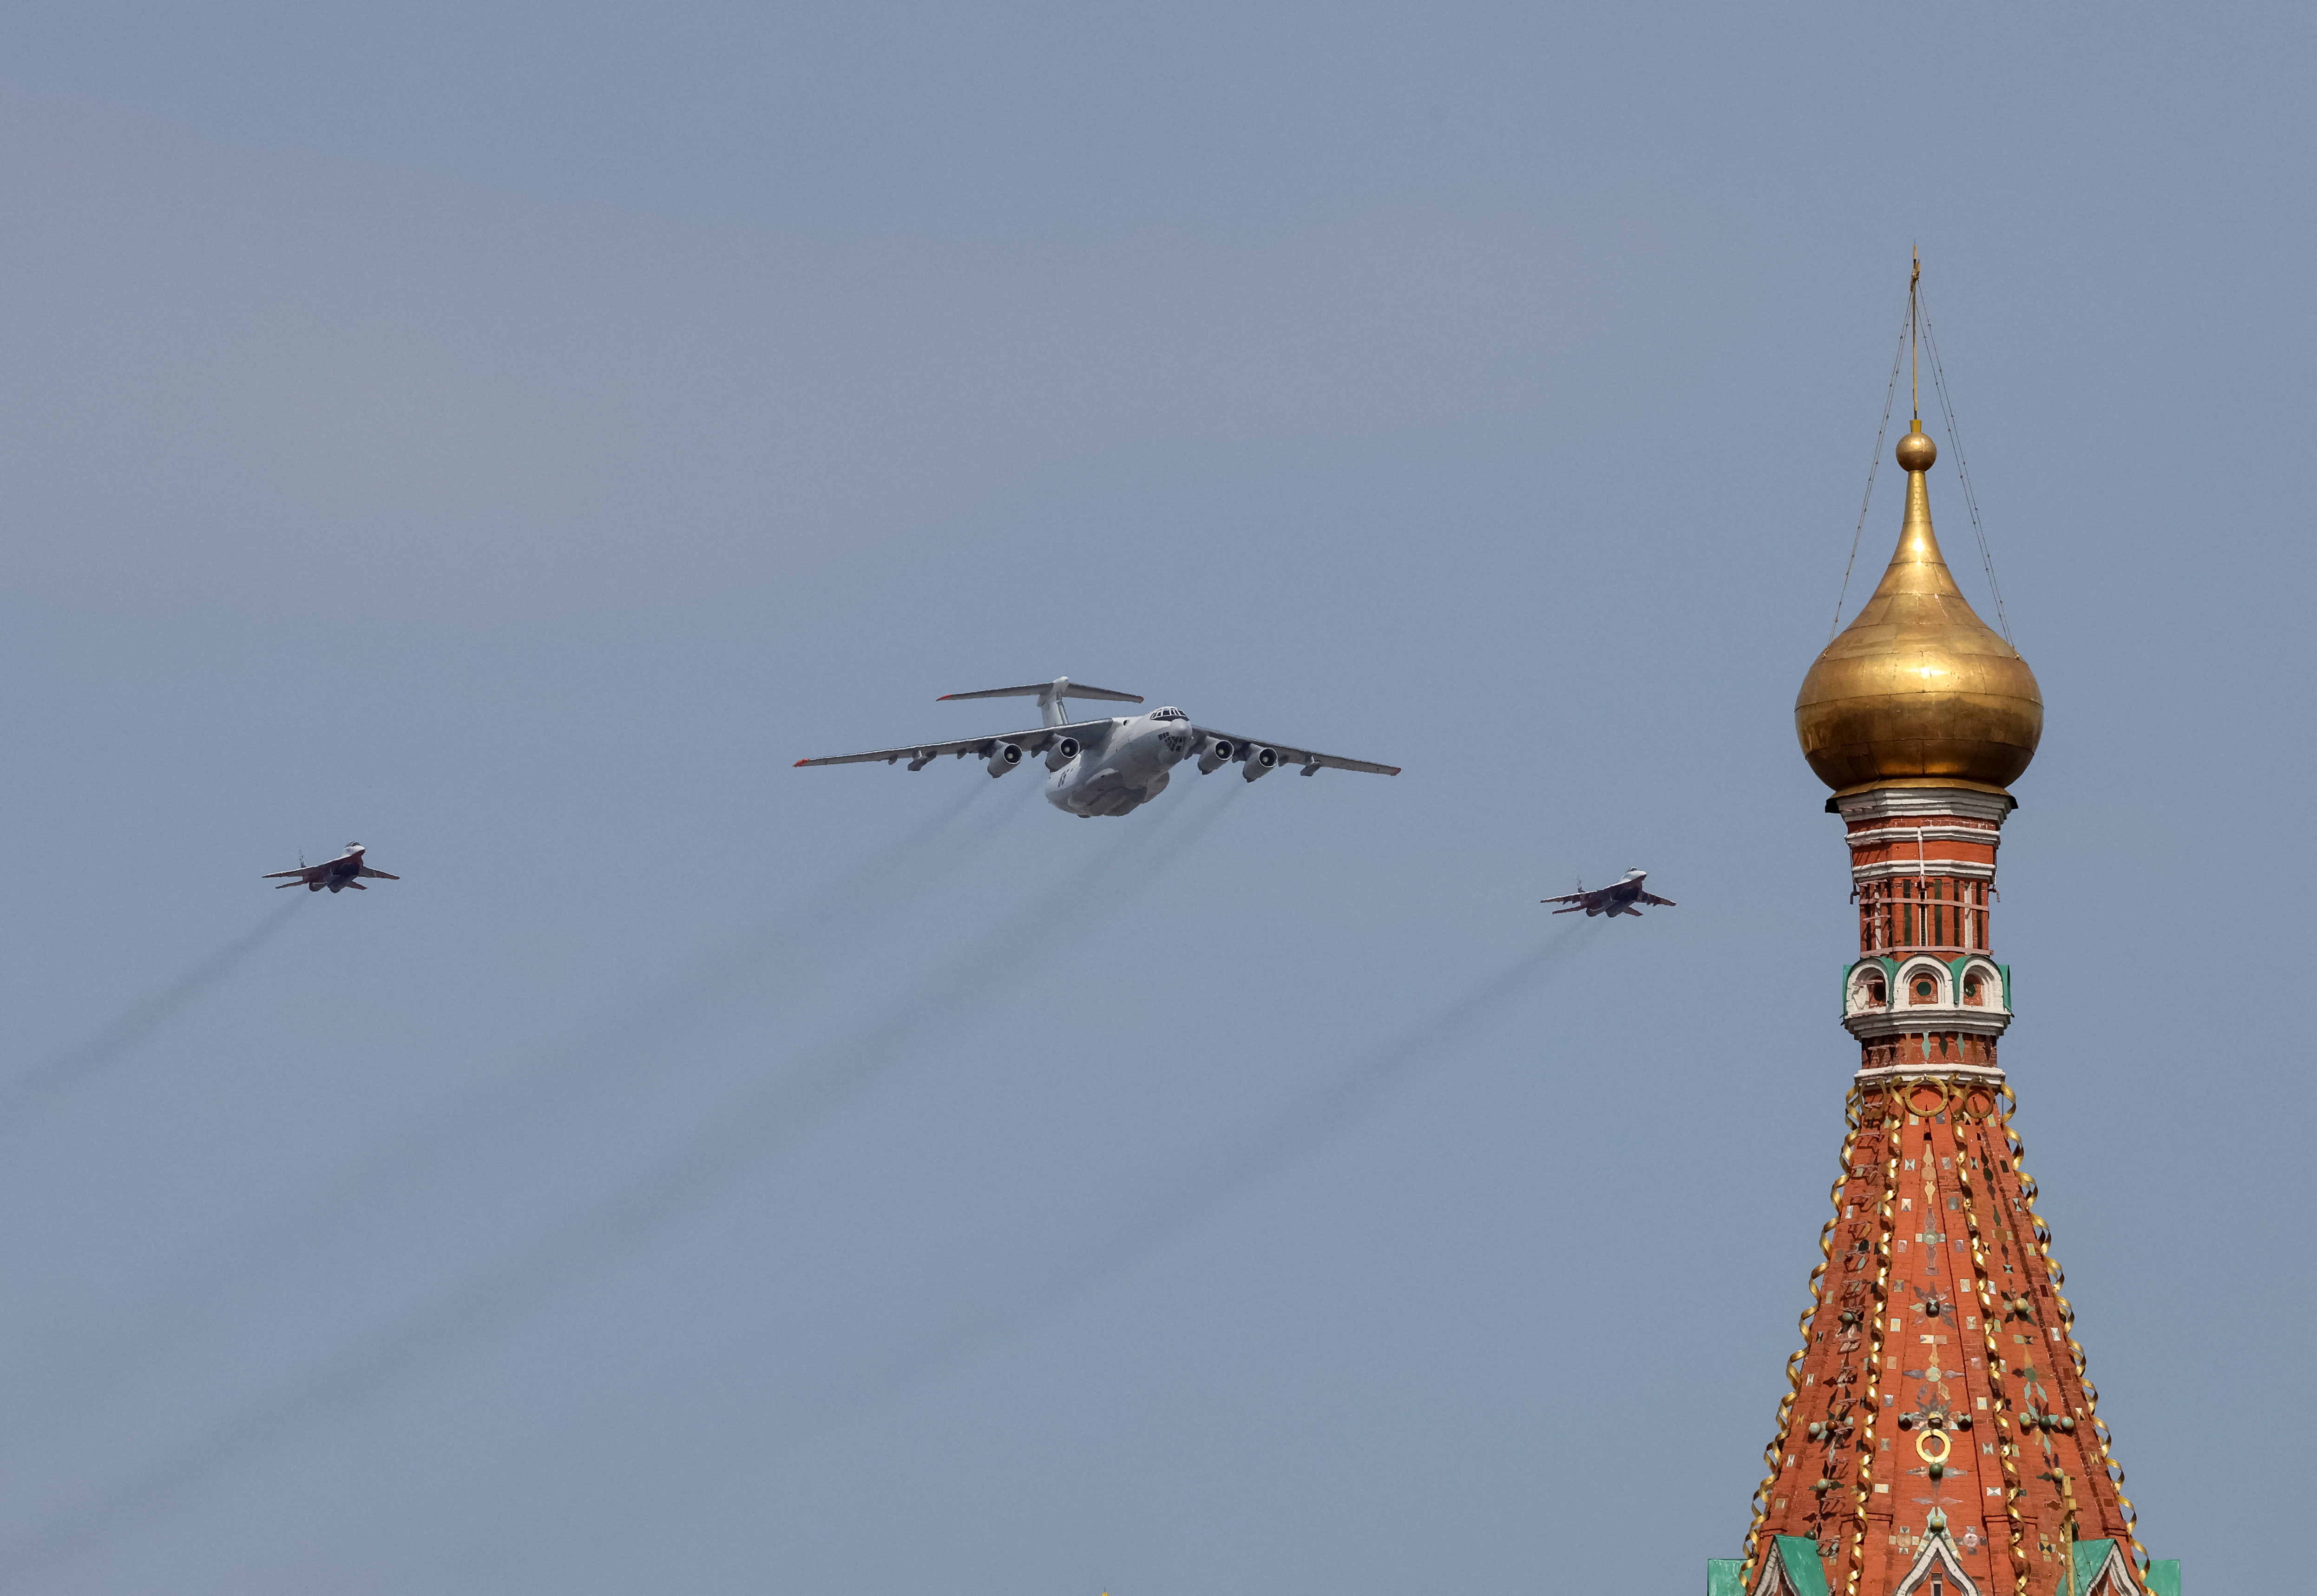 Un avión de transporte militar ruso Il-78 y aviones de combate MiG-29 vuelan en formación durante un ensayo para un pase aéreo, parte de un desfile militar que marca el aniversario de la victoria sobre la Alemania nazi en la Segunda Guerra Mundial, en el centro de Moscú, Rusia, el 7 de mayo de 2022. REUTERS/Shamil Zhumatov